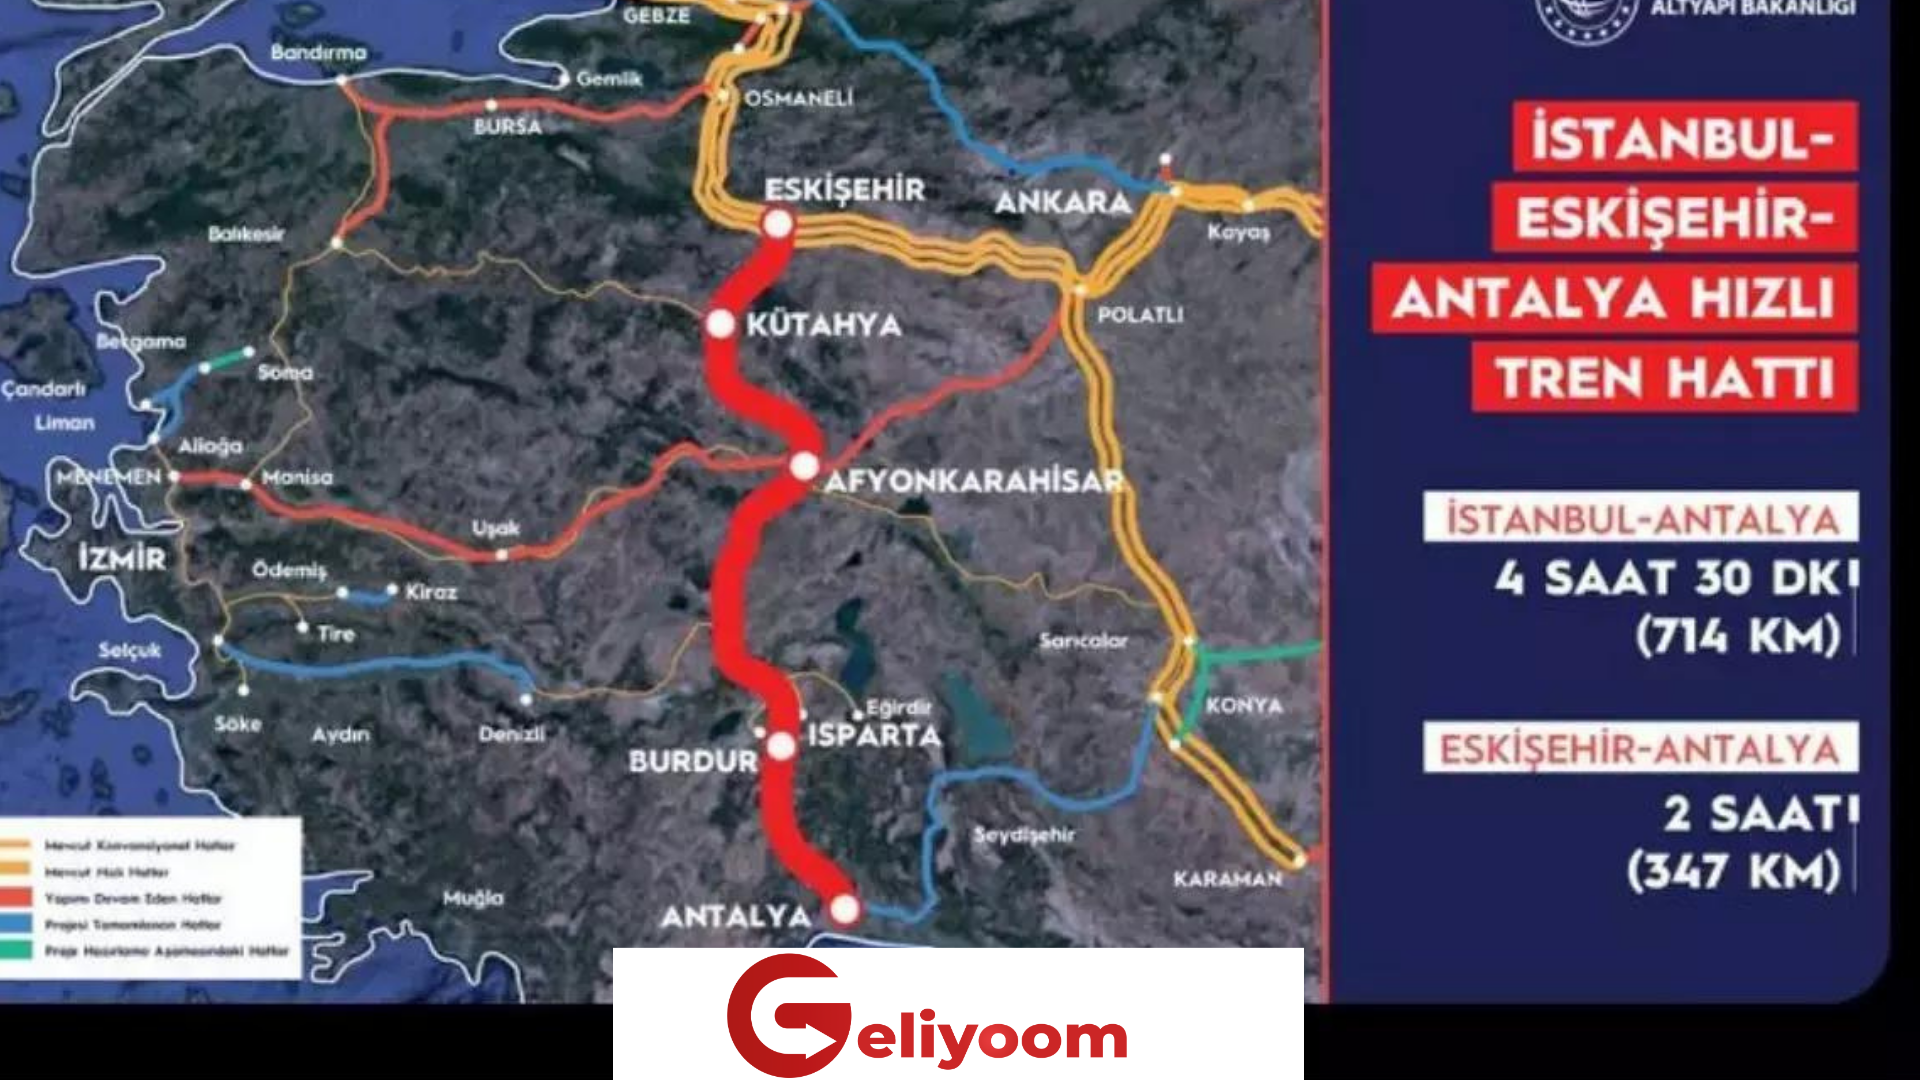 Bakan Karaismailoğlu: Eskişehir-Antalya’ya Hızlı Tren ile 2 Saat!